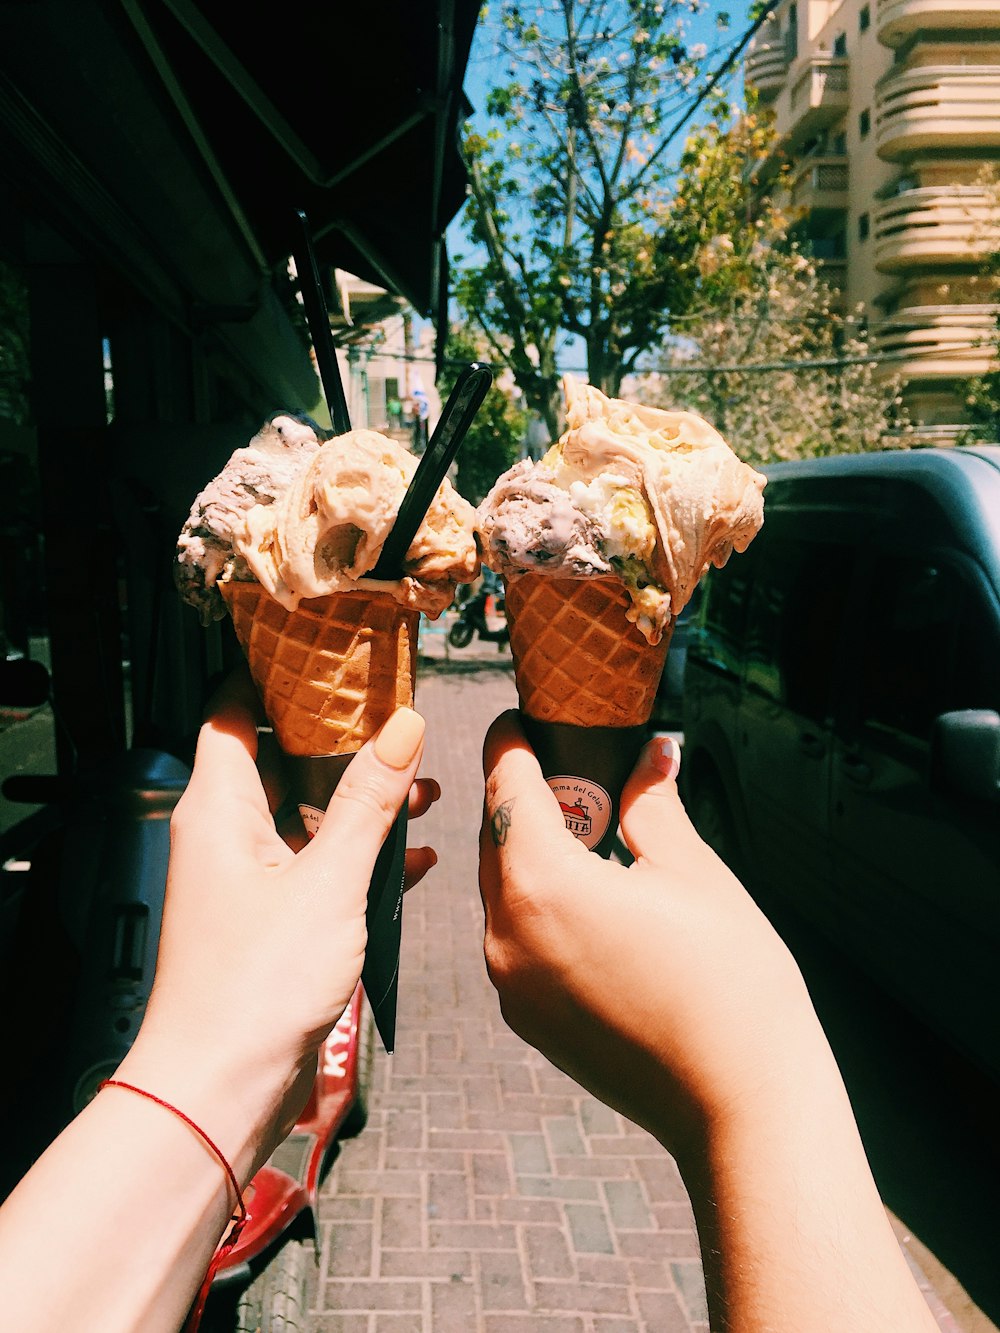 two cones of ice creams